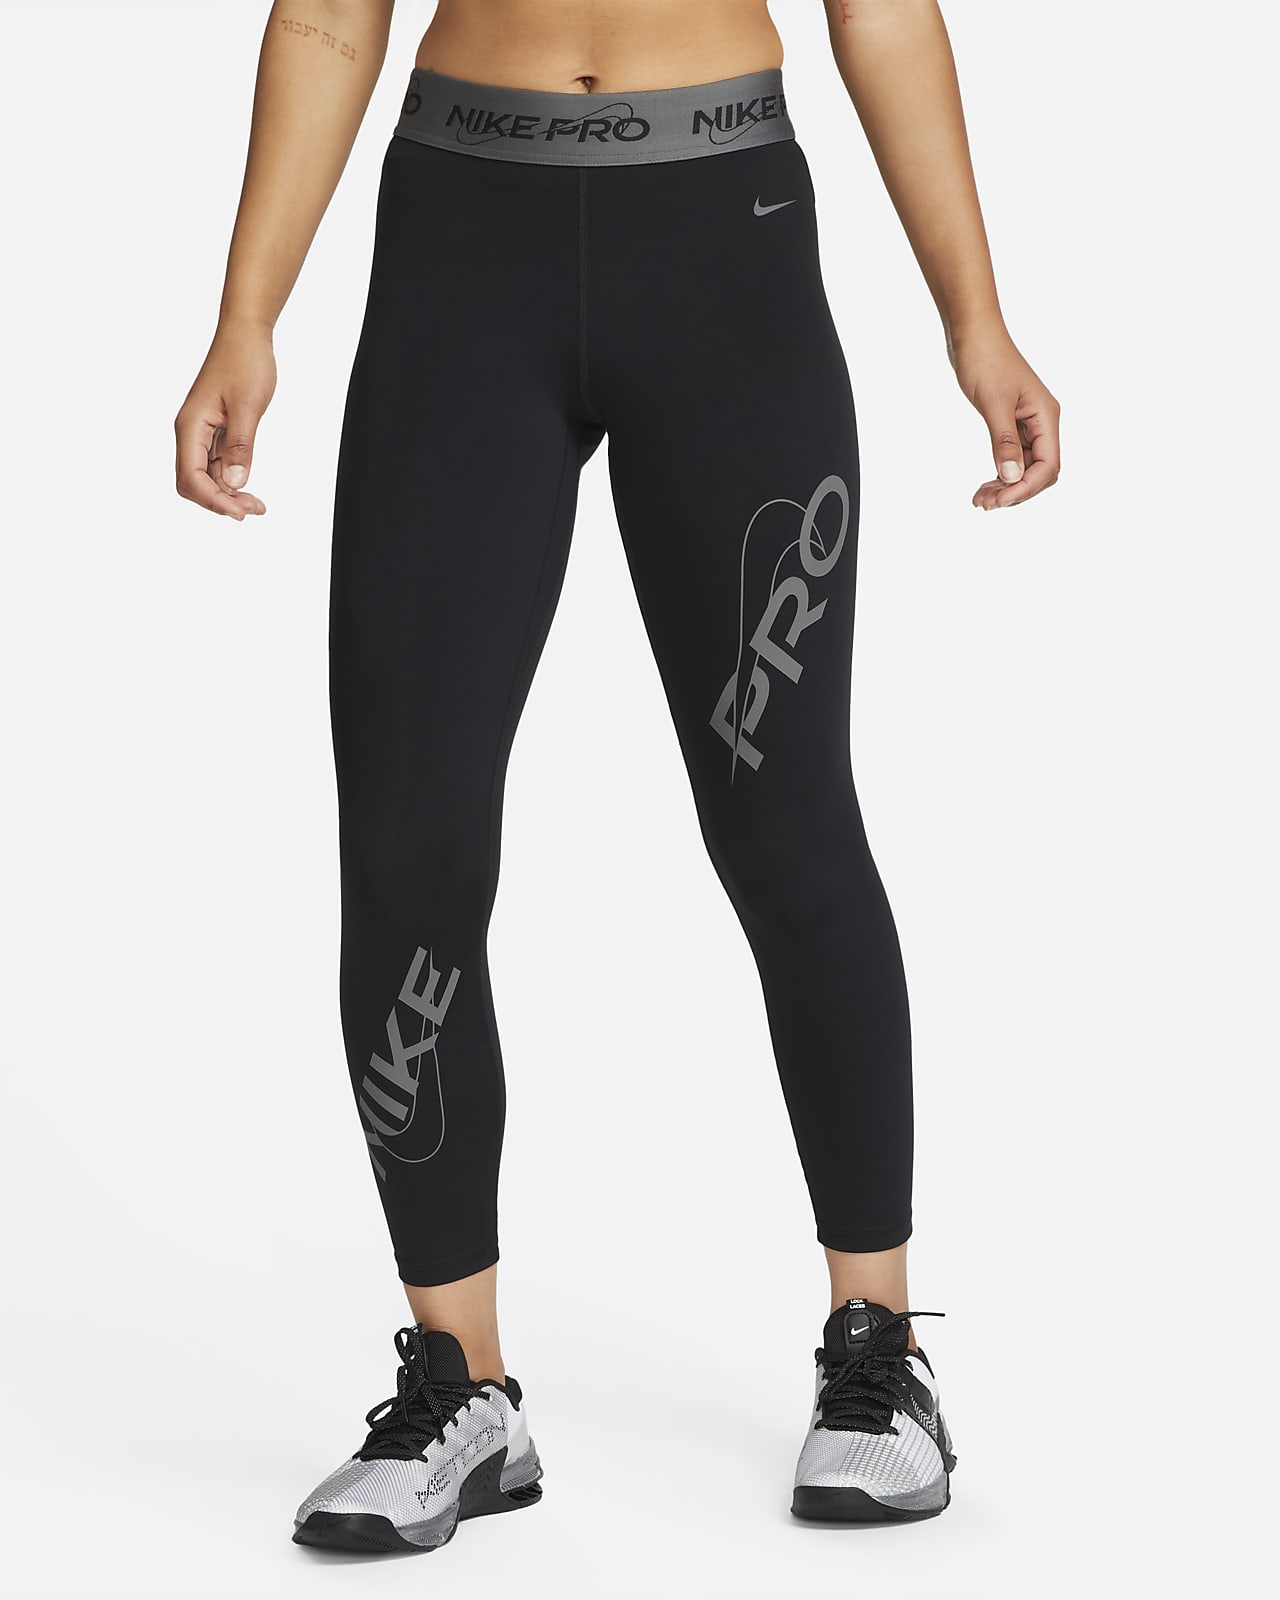 Damskie legginsy o długości 7/8 ze średnim stanem i grafiką Nike Pro